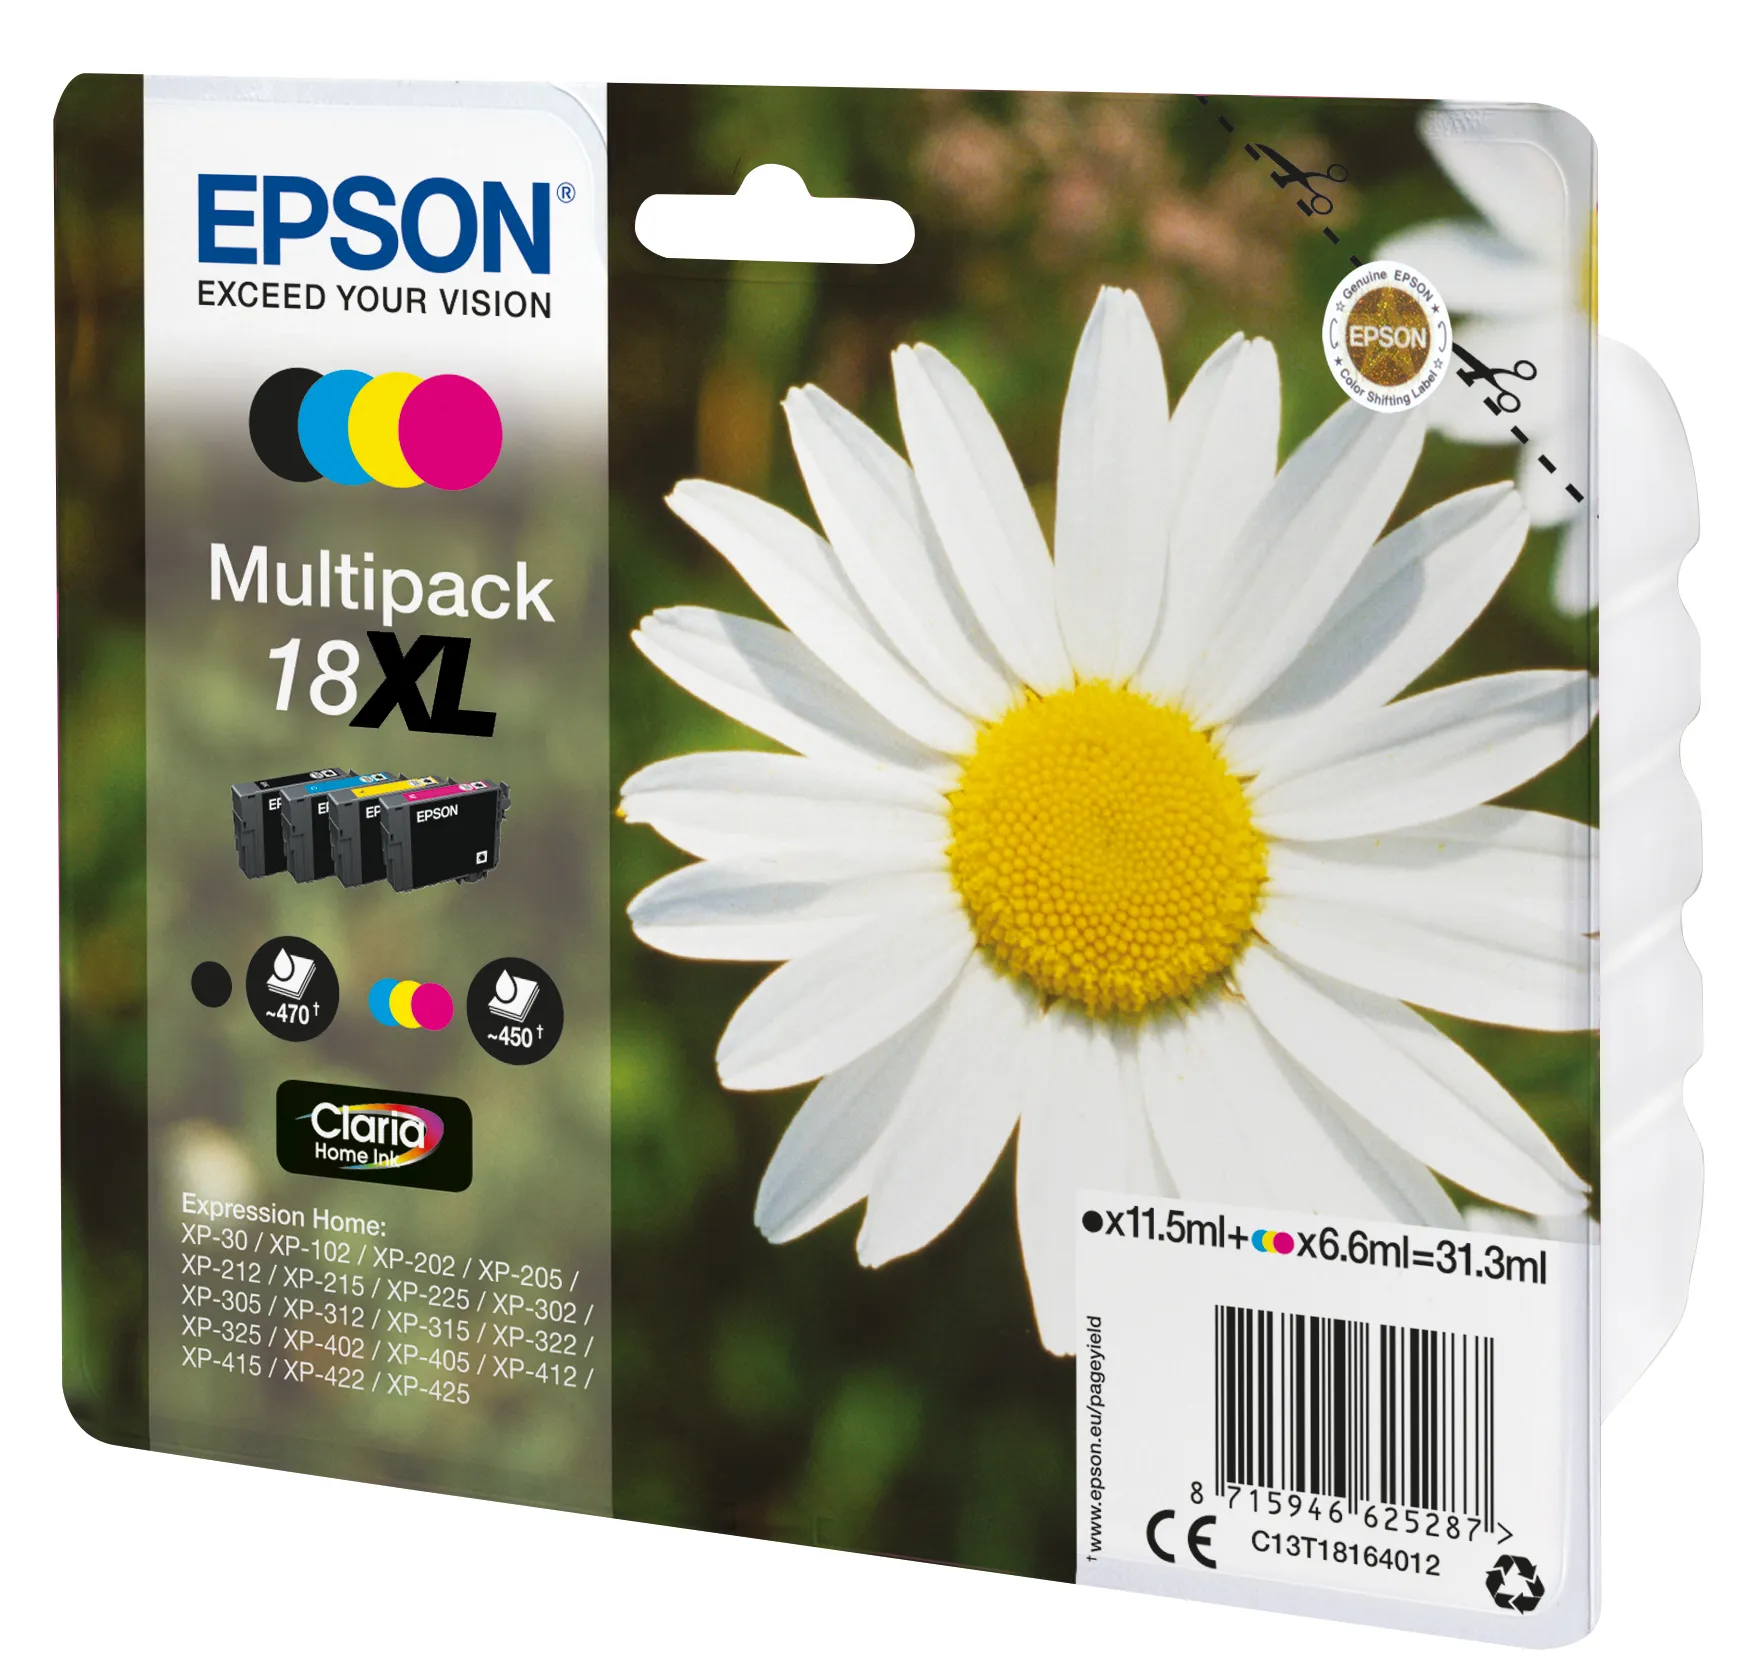 Vente EPSON 18XL cartouche encre noir et tricolore haute Epson au meilleur prix - visuel 4